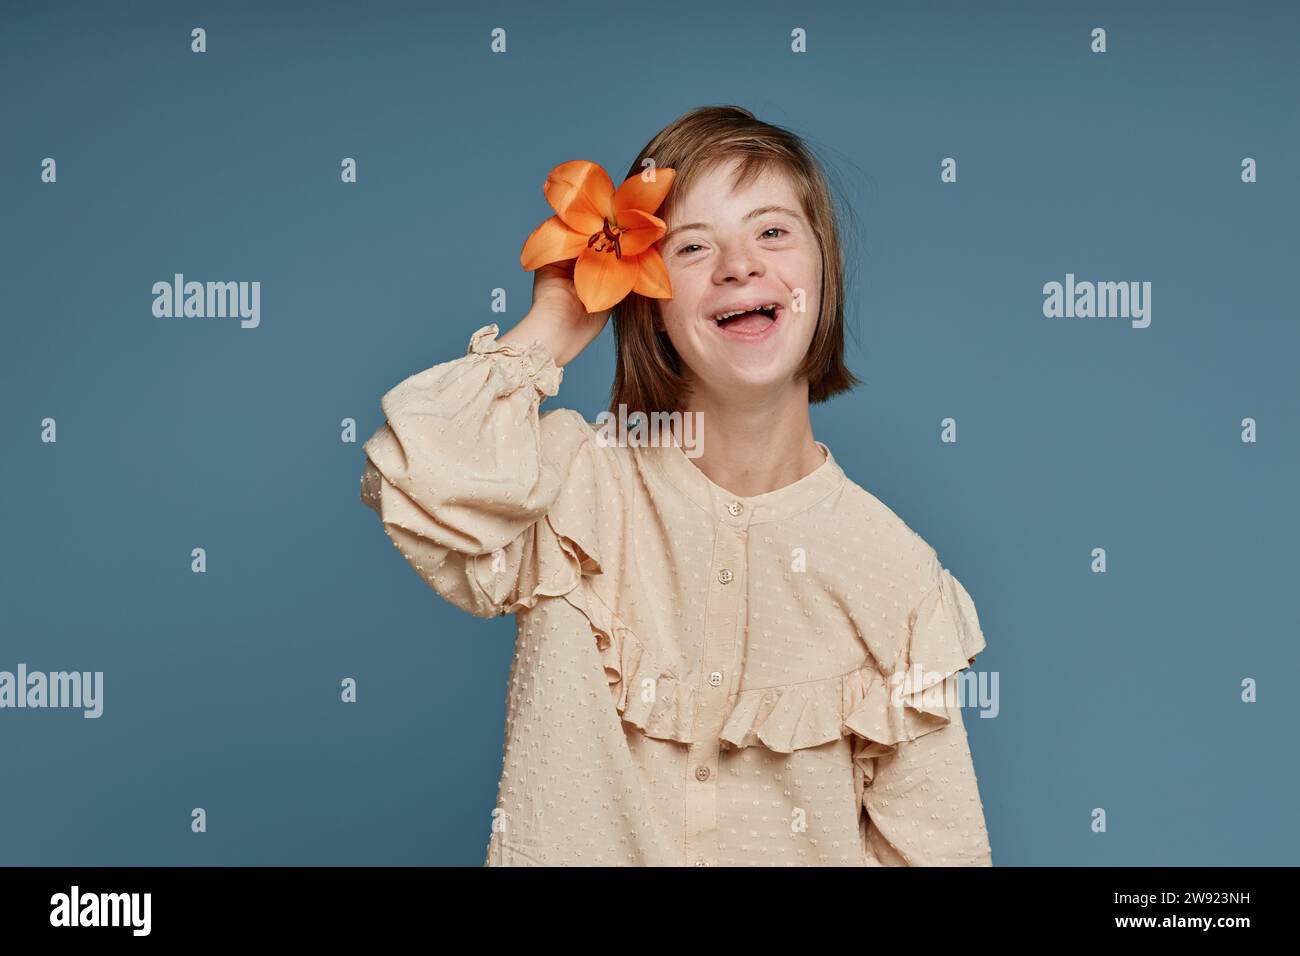 Adolescente joyeuse avec le syndrome de Down avec la fleur d'orchidée sur fond bleu Banque D'Images